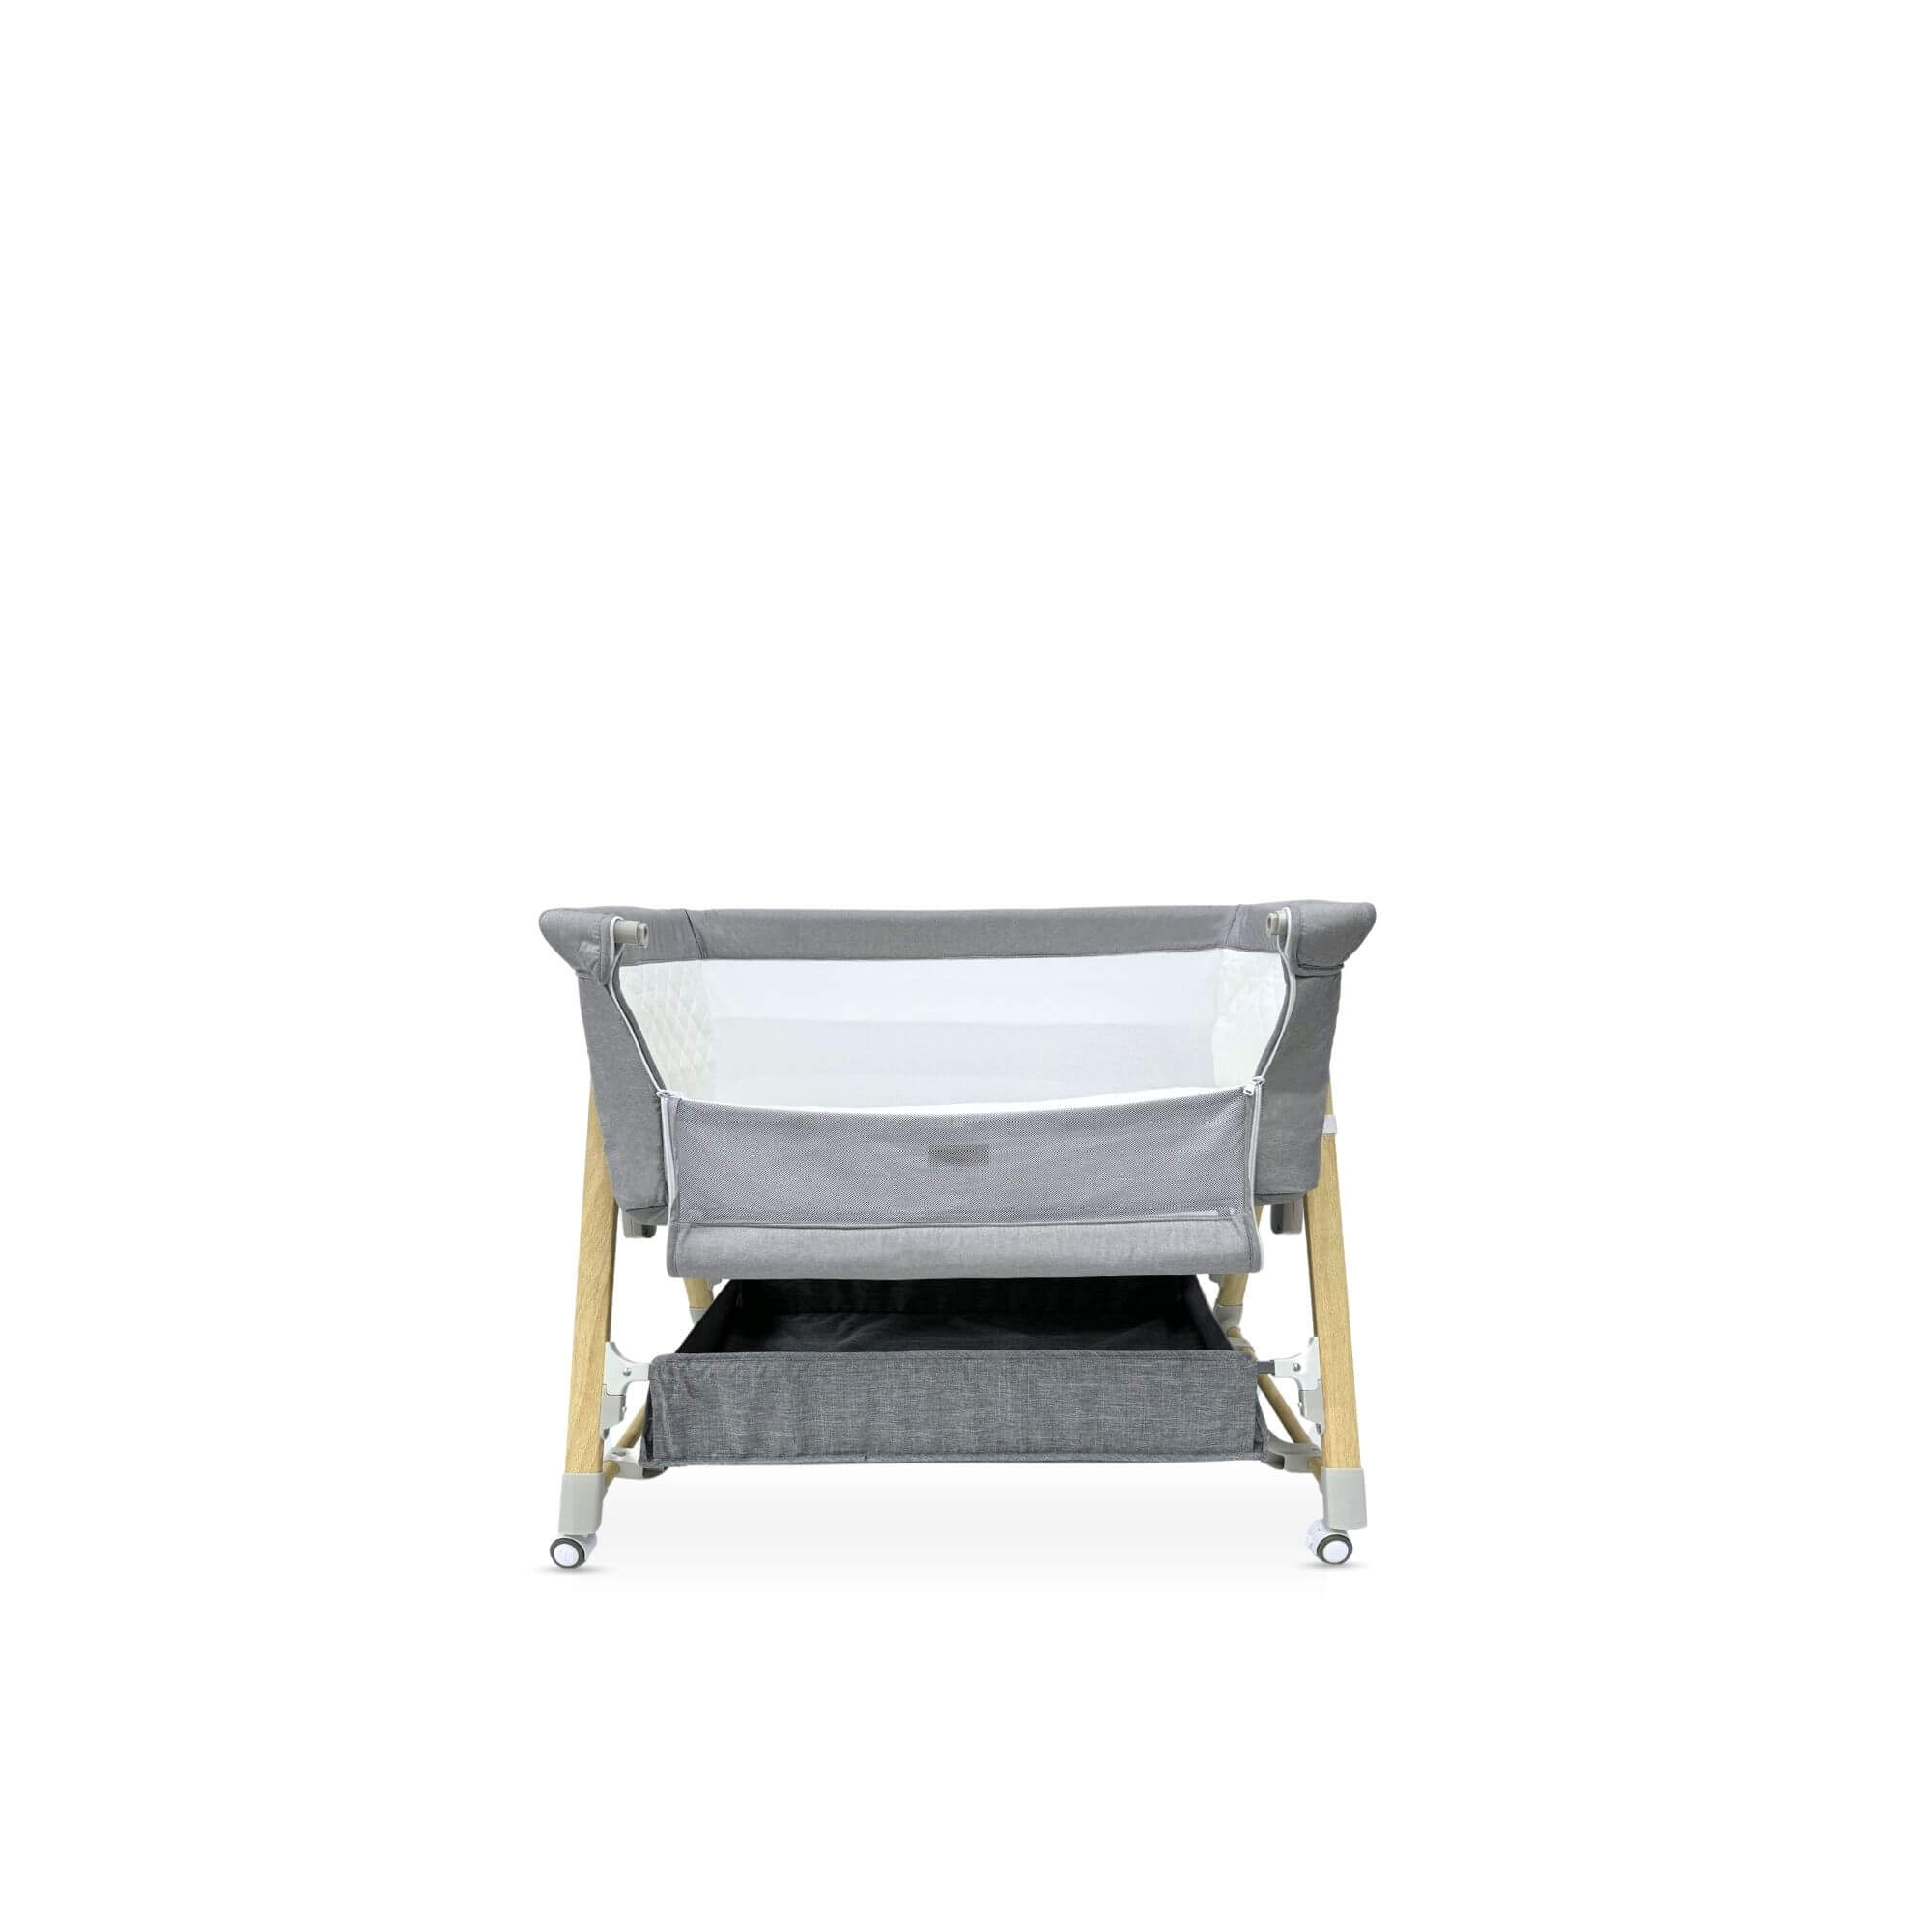 noola baby co-sleeper bassinet